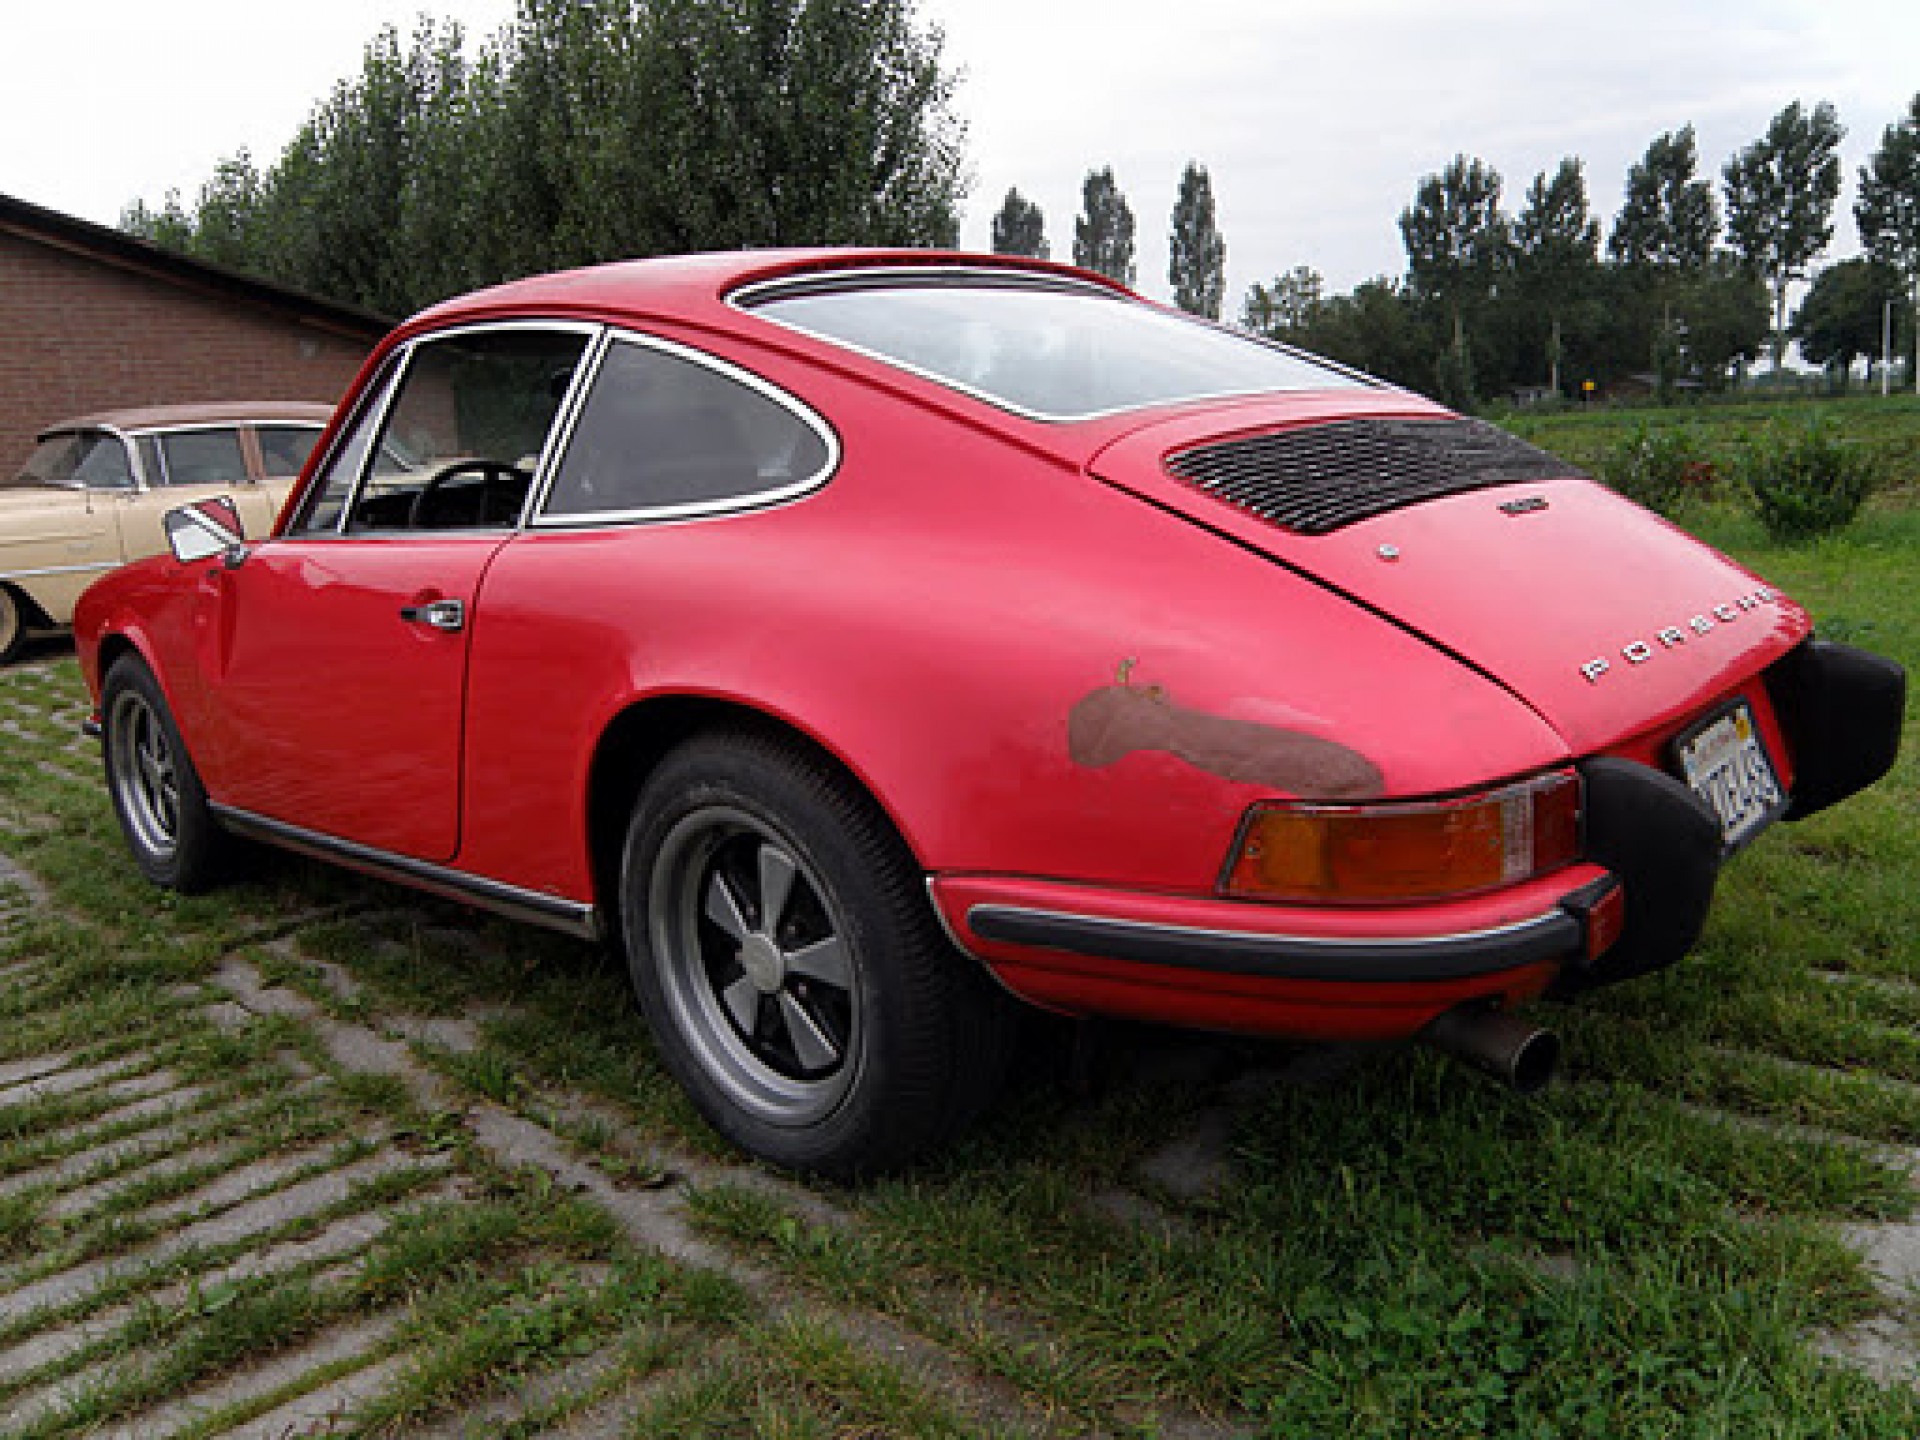 Porsche Classic Cars | Porsche oldtimers for sale at E & R ...